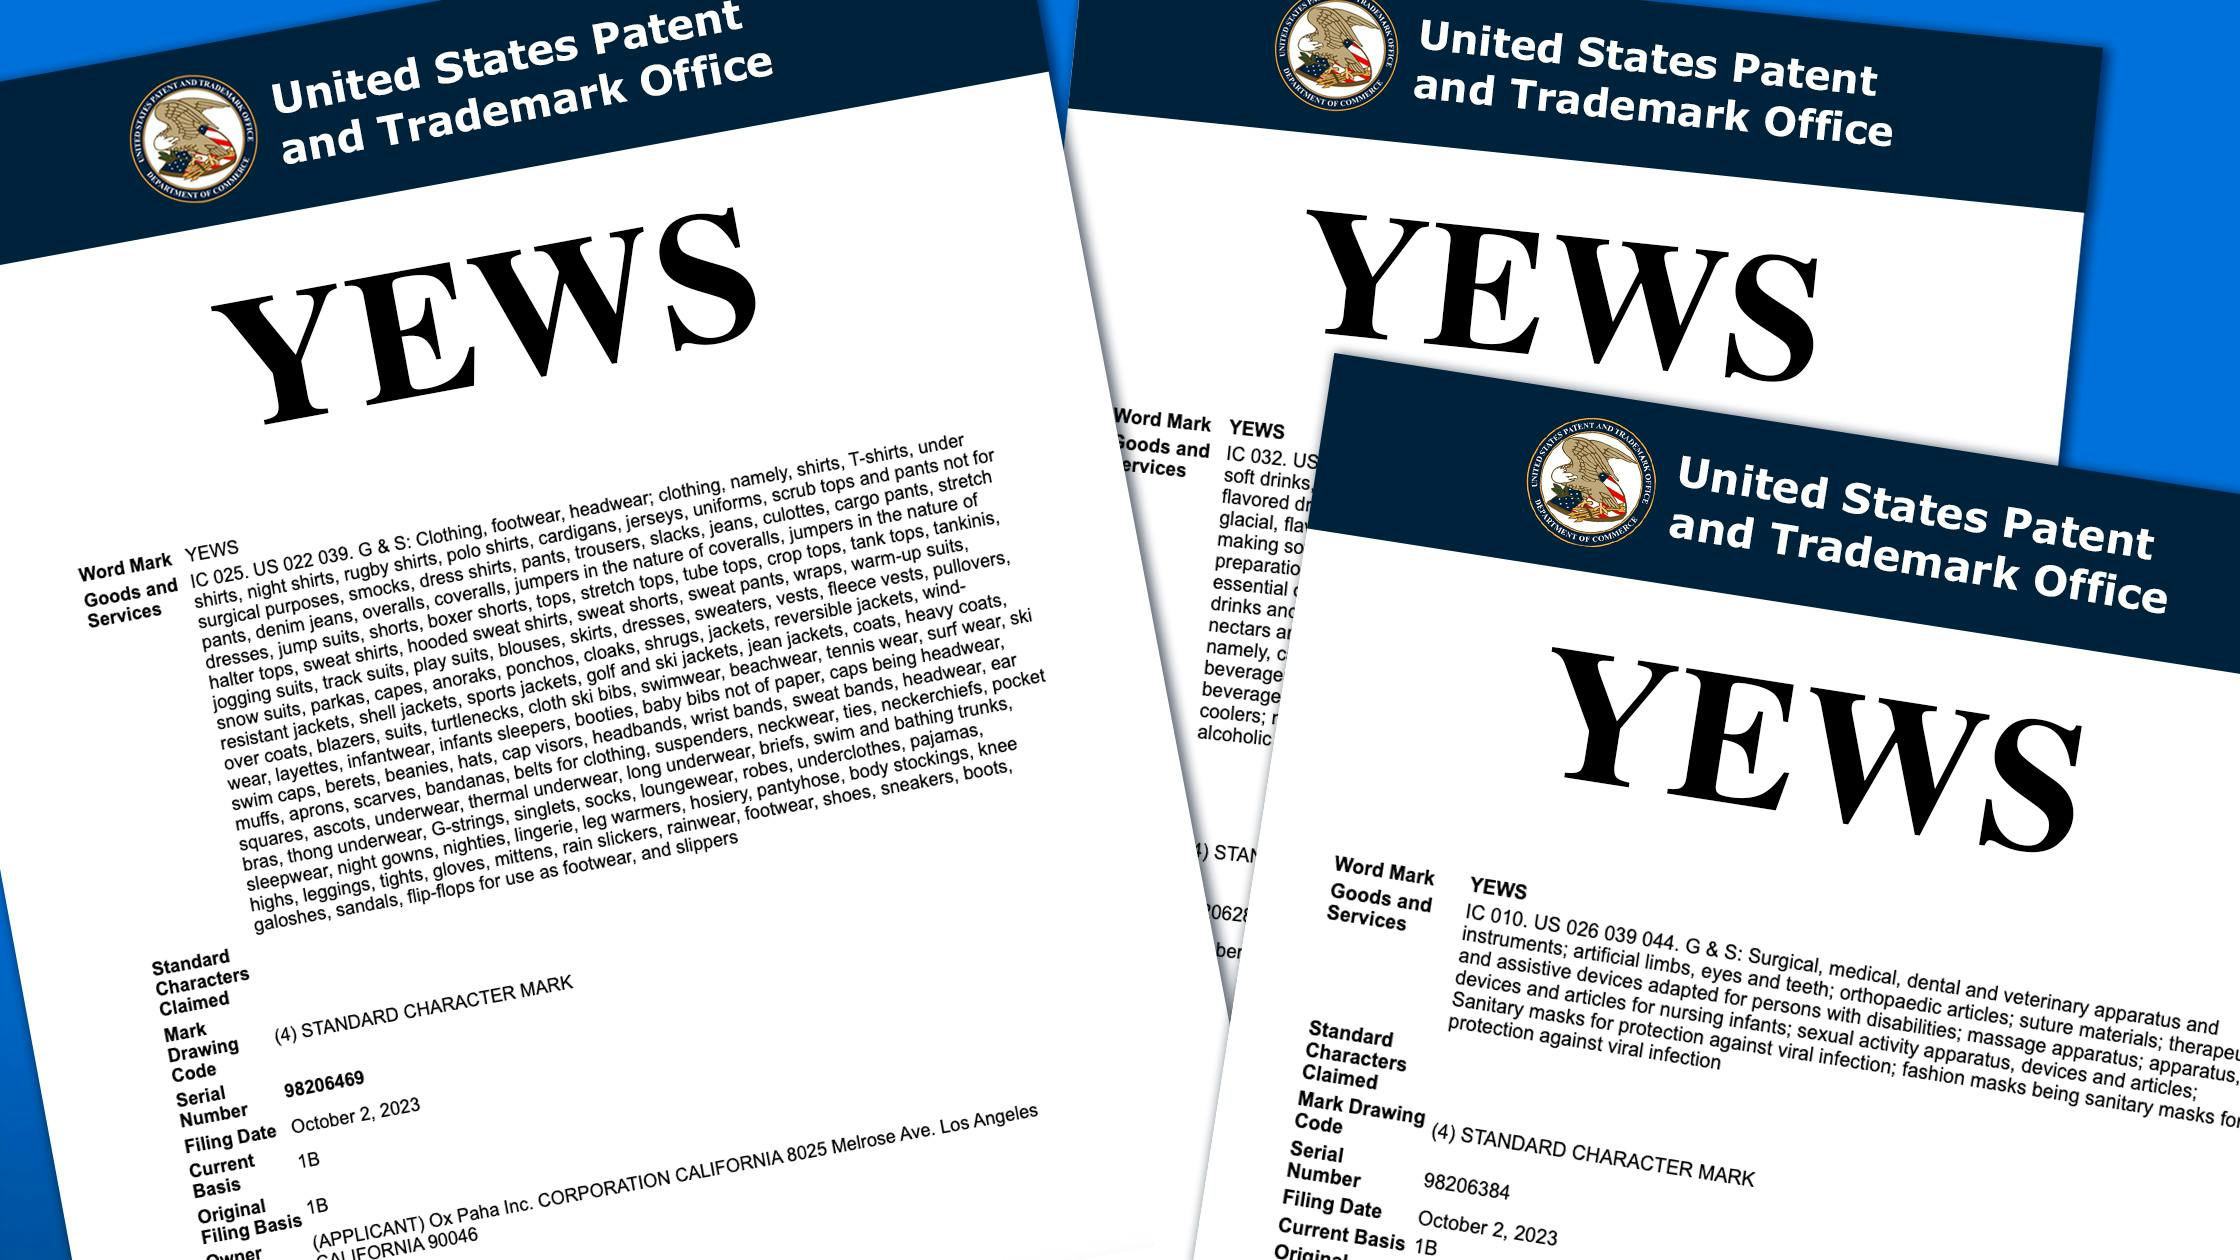 Ye's Next Venture? Unpacking the 'YEWS' Trademark Filing